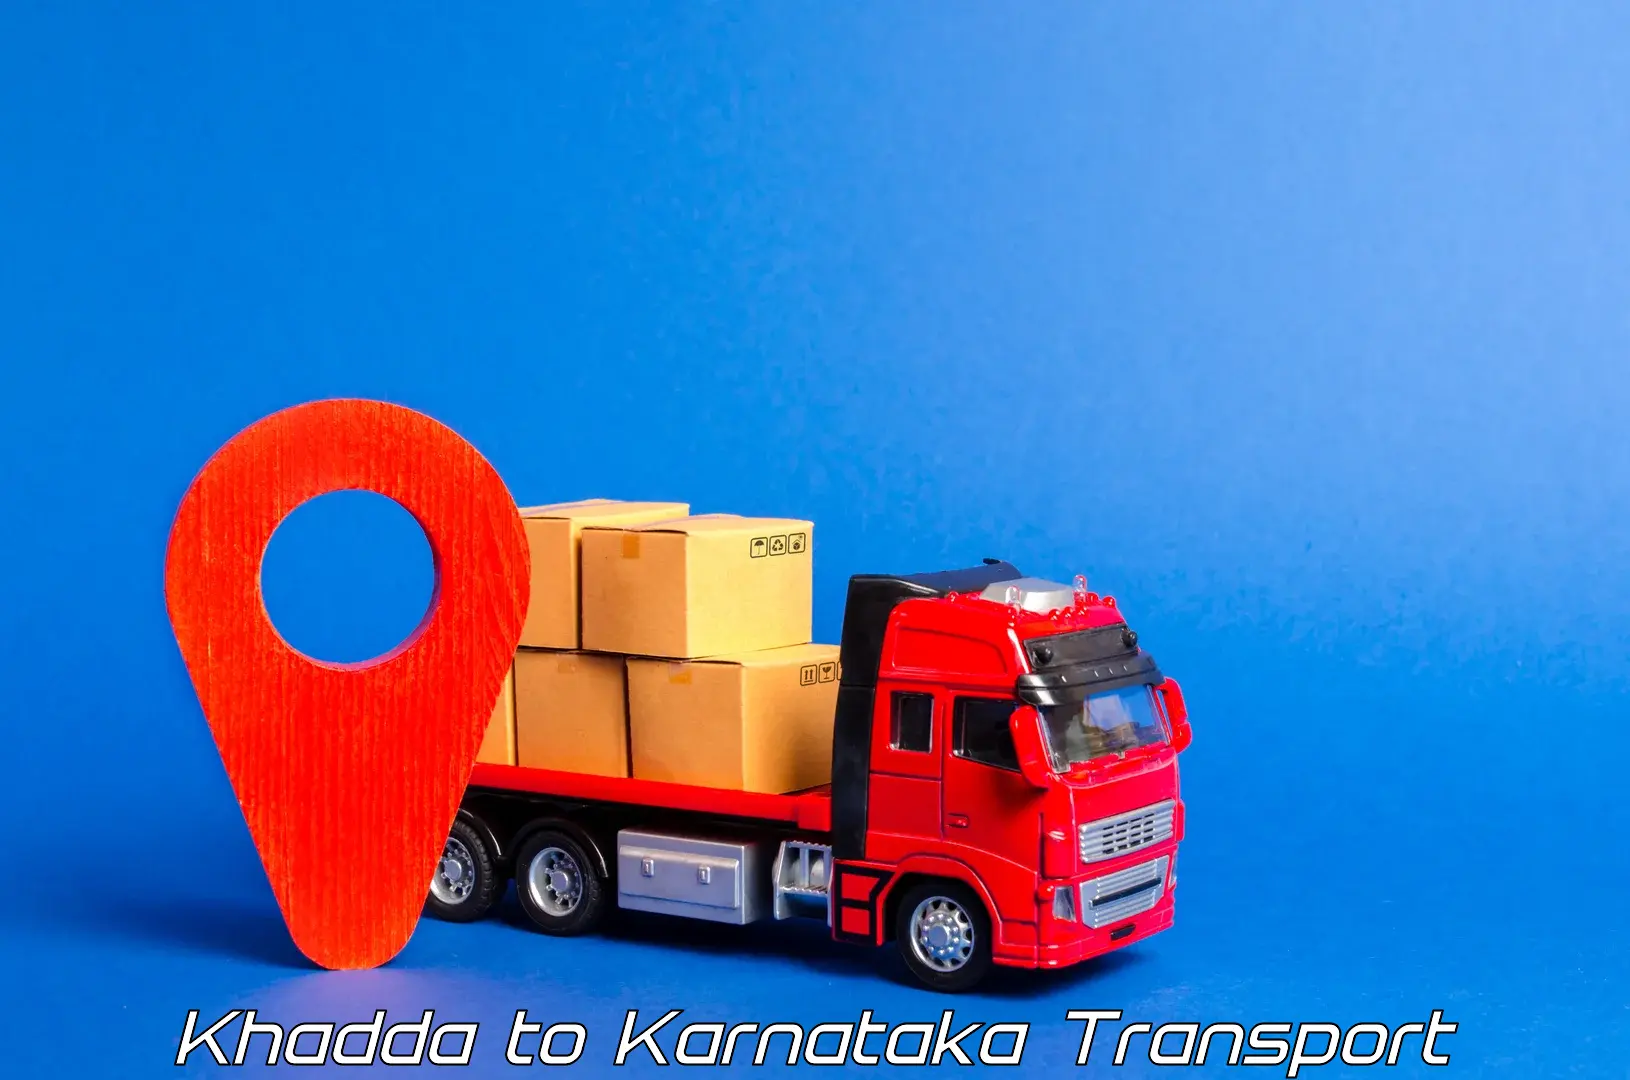 Cargo transport services Khadda to Navalgund